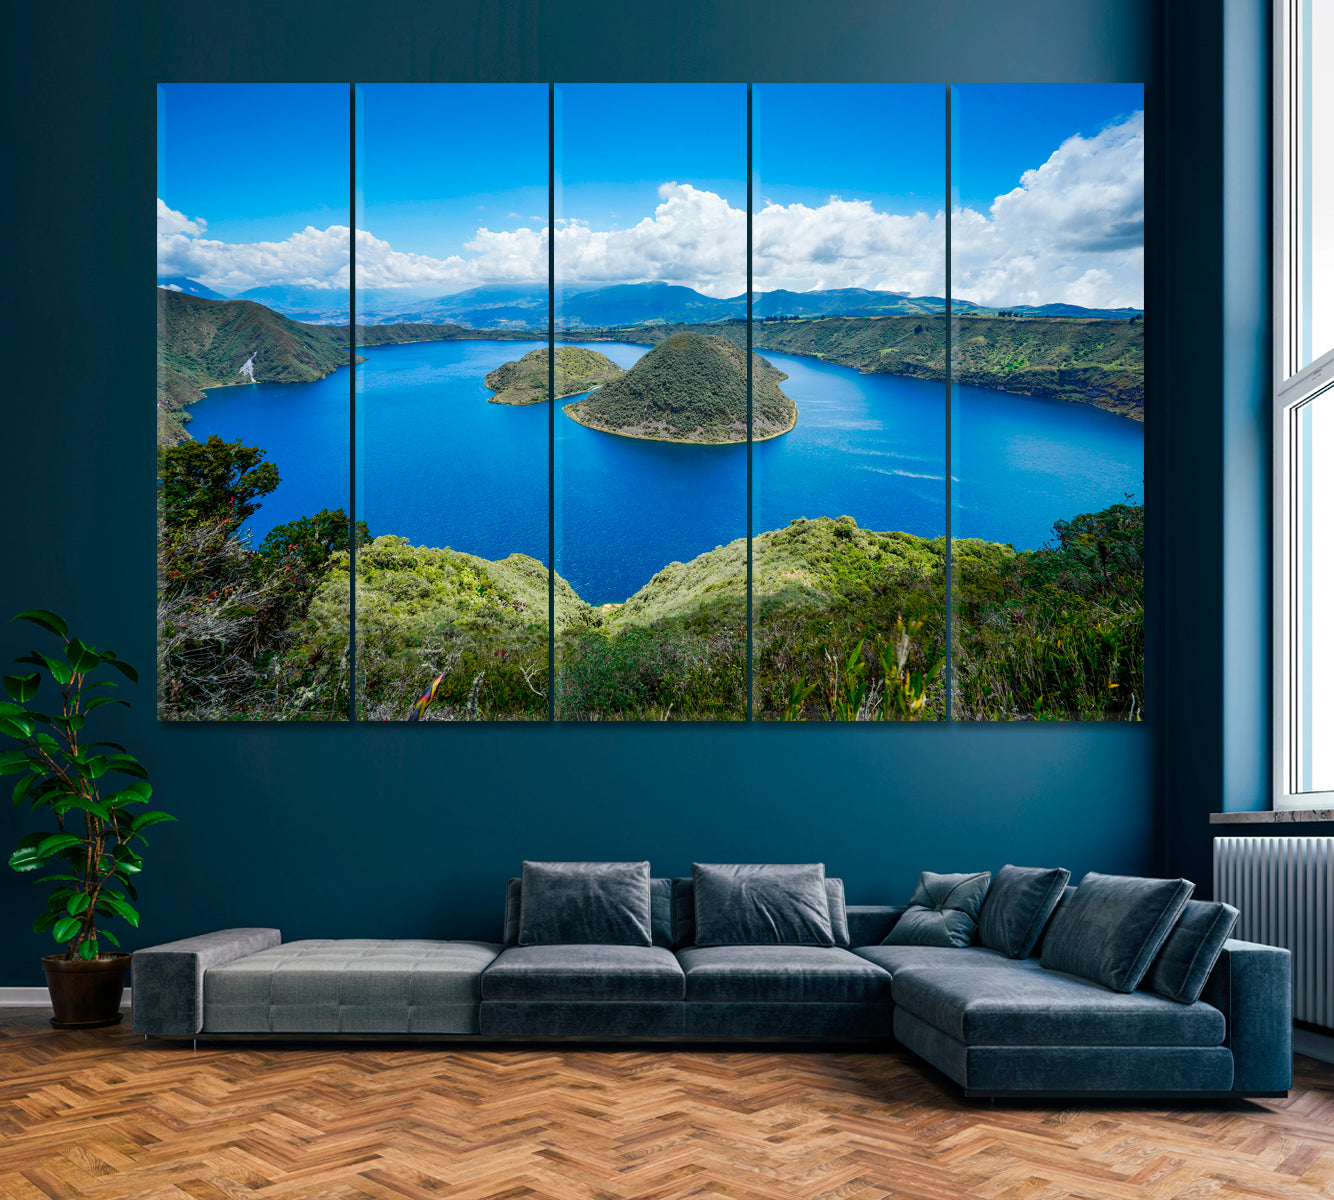 Gorgeous Blue Cuicocha Lake Ecuador Canvas Print ArtLexy 5 Panels 36"x24" inches 